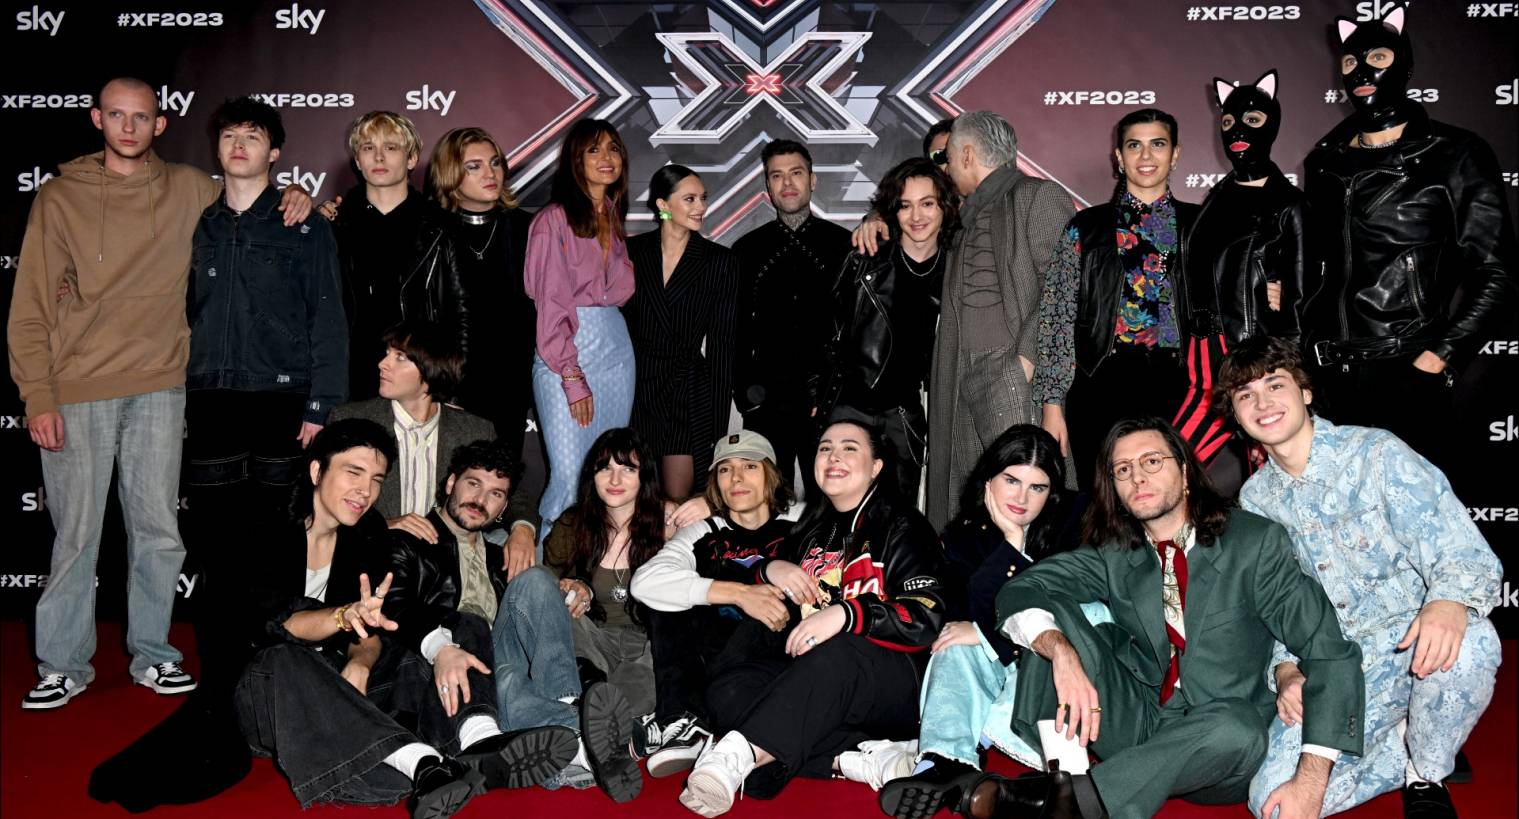 Elettrizzante X Factor 2023, al via Live Show su Sky e NOW. Ospite speciale Laura Pausini